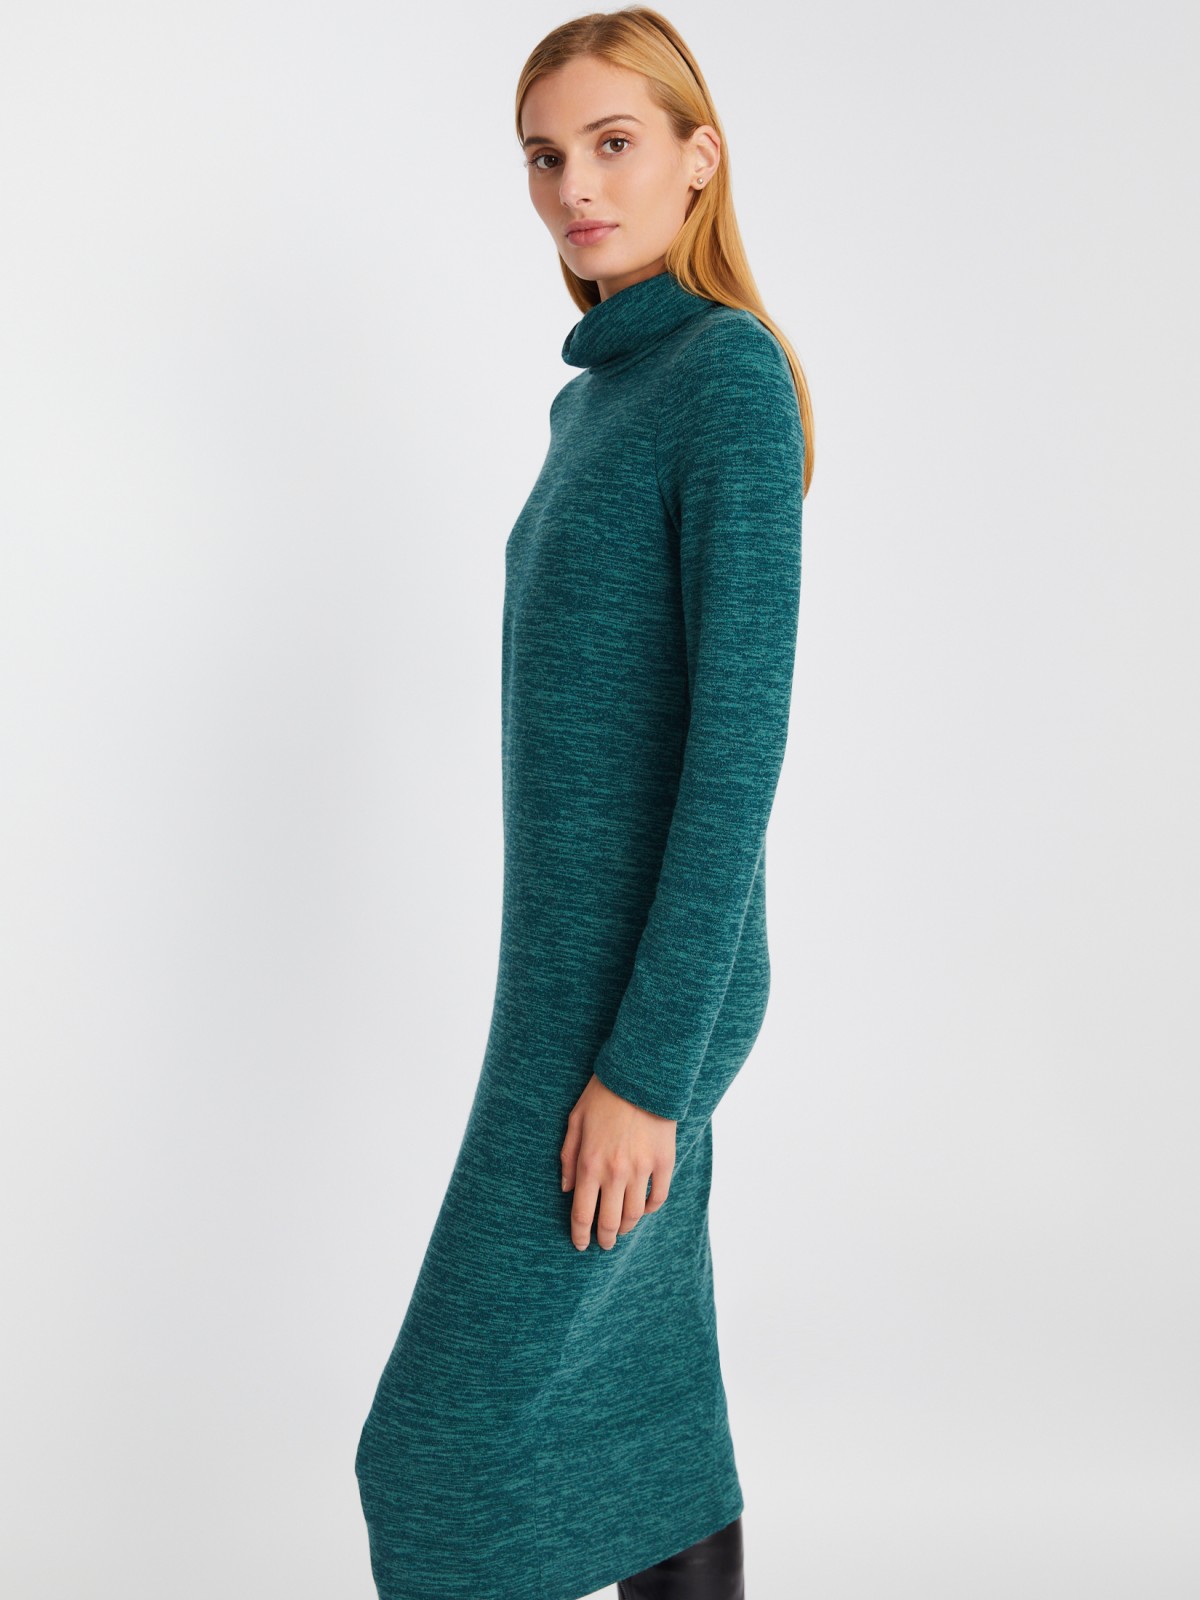 Трикотажное платье-свитер длины миди с высоким горлом zolla 02334819F062, цвет мятный, размер XS - фото 3